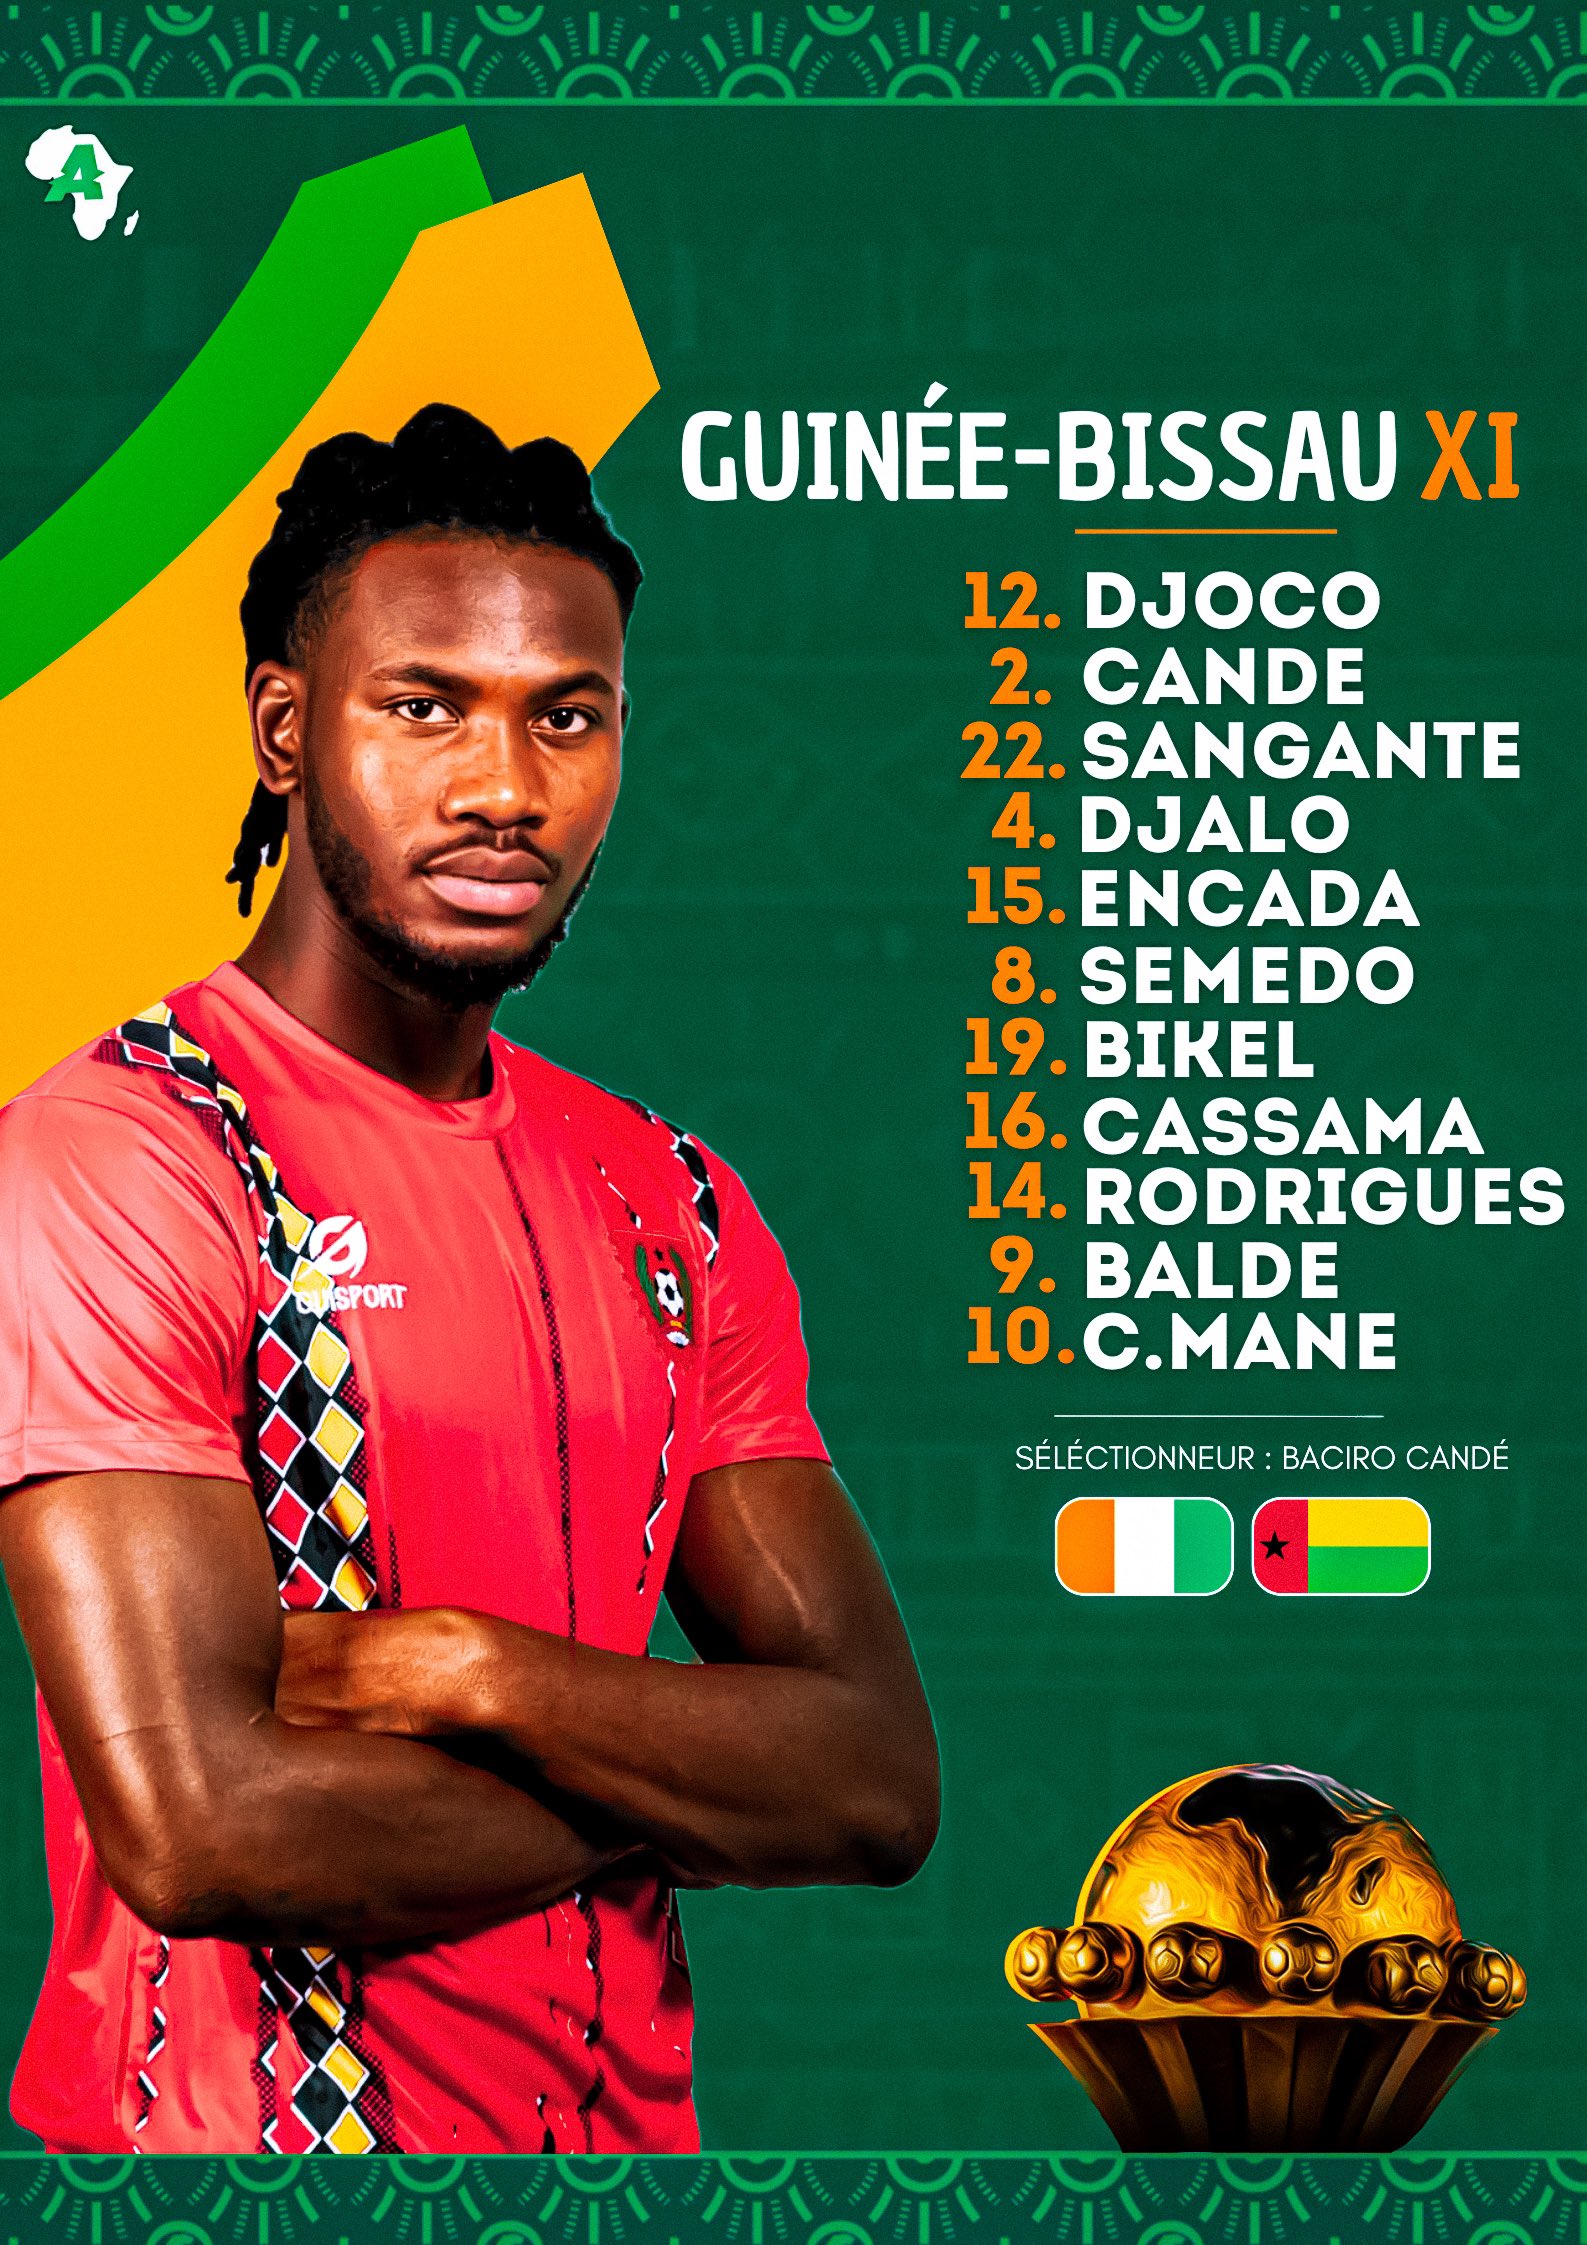 Guinée-Bissau : Djoco - Candé, Djalo, Sangante - Encada, Bikel, Semedo, Cassama, C. Mané - Rodrigues, Baldé